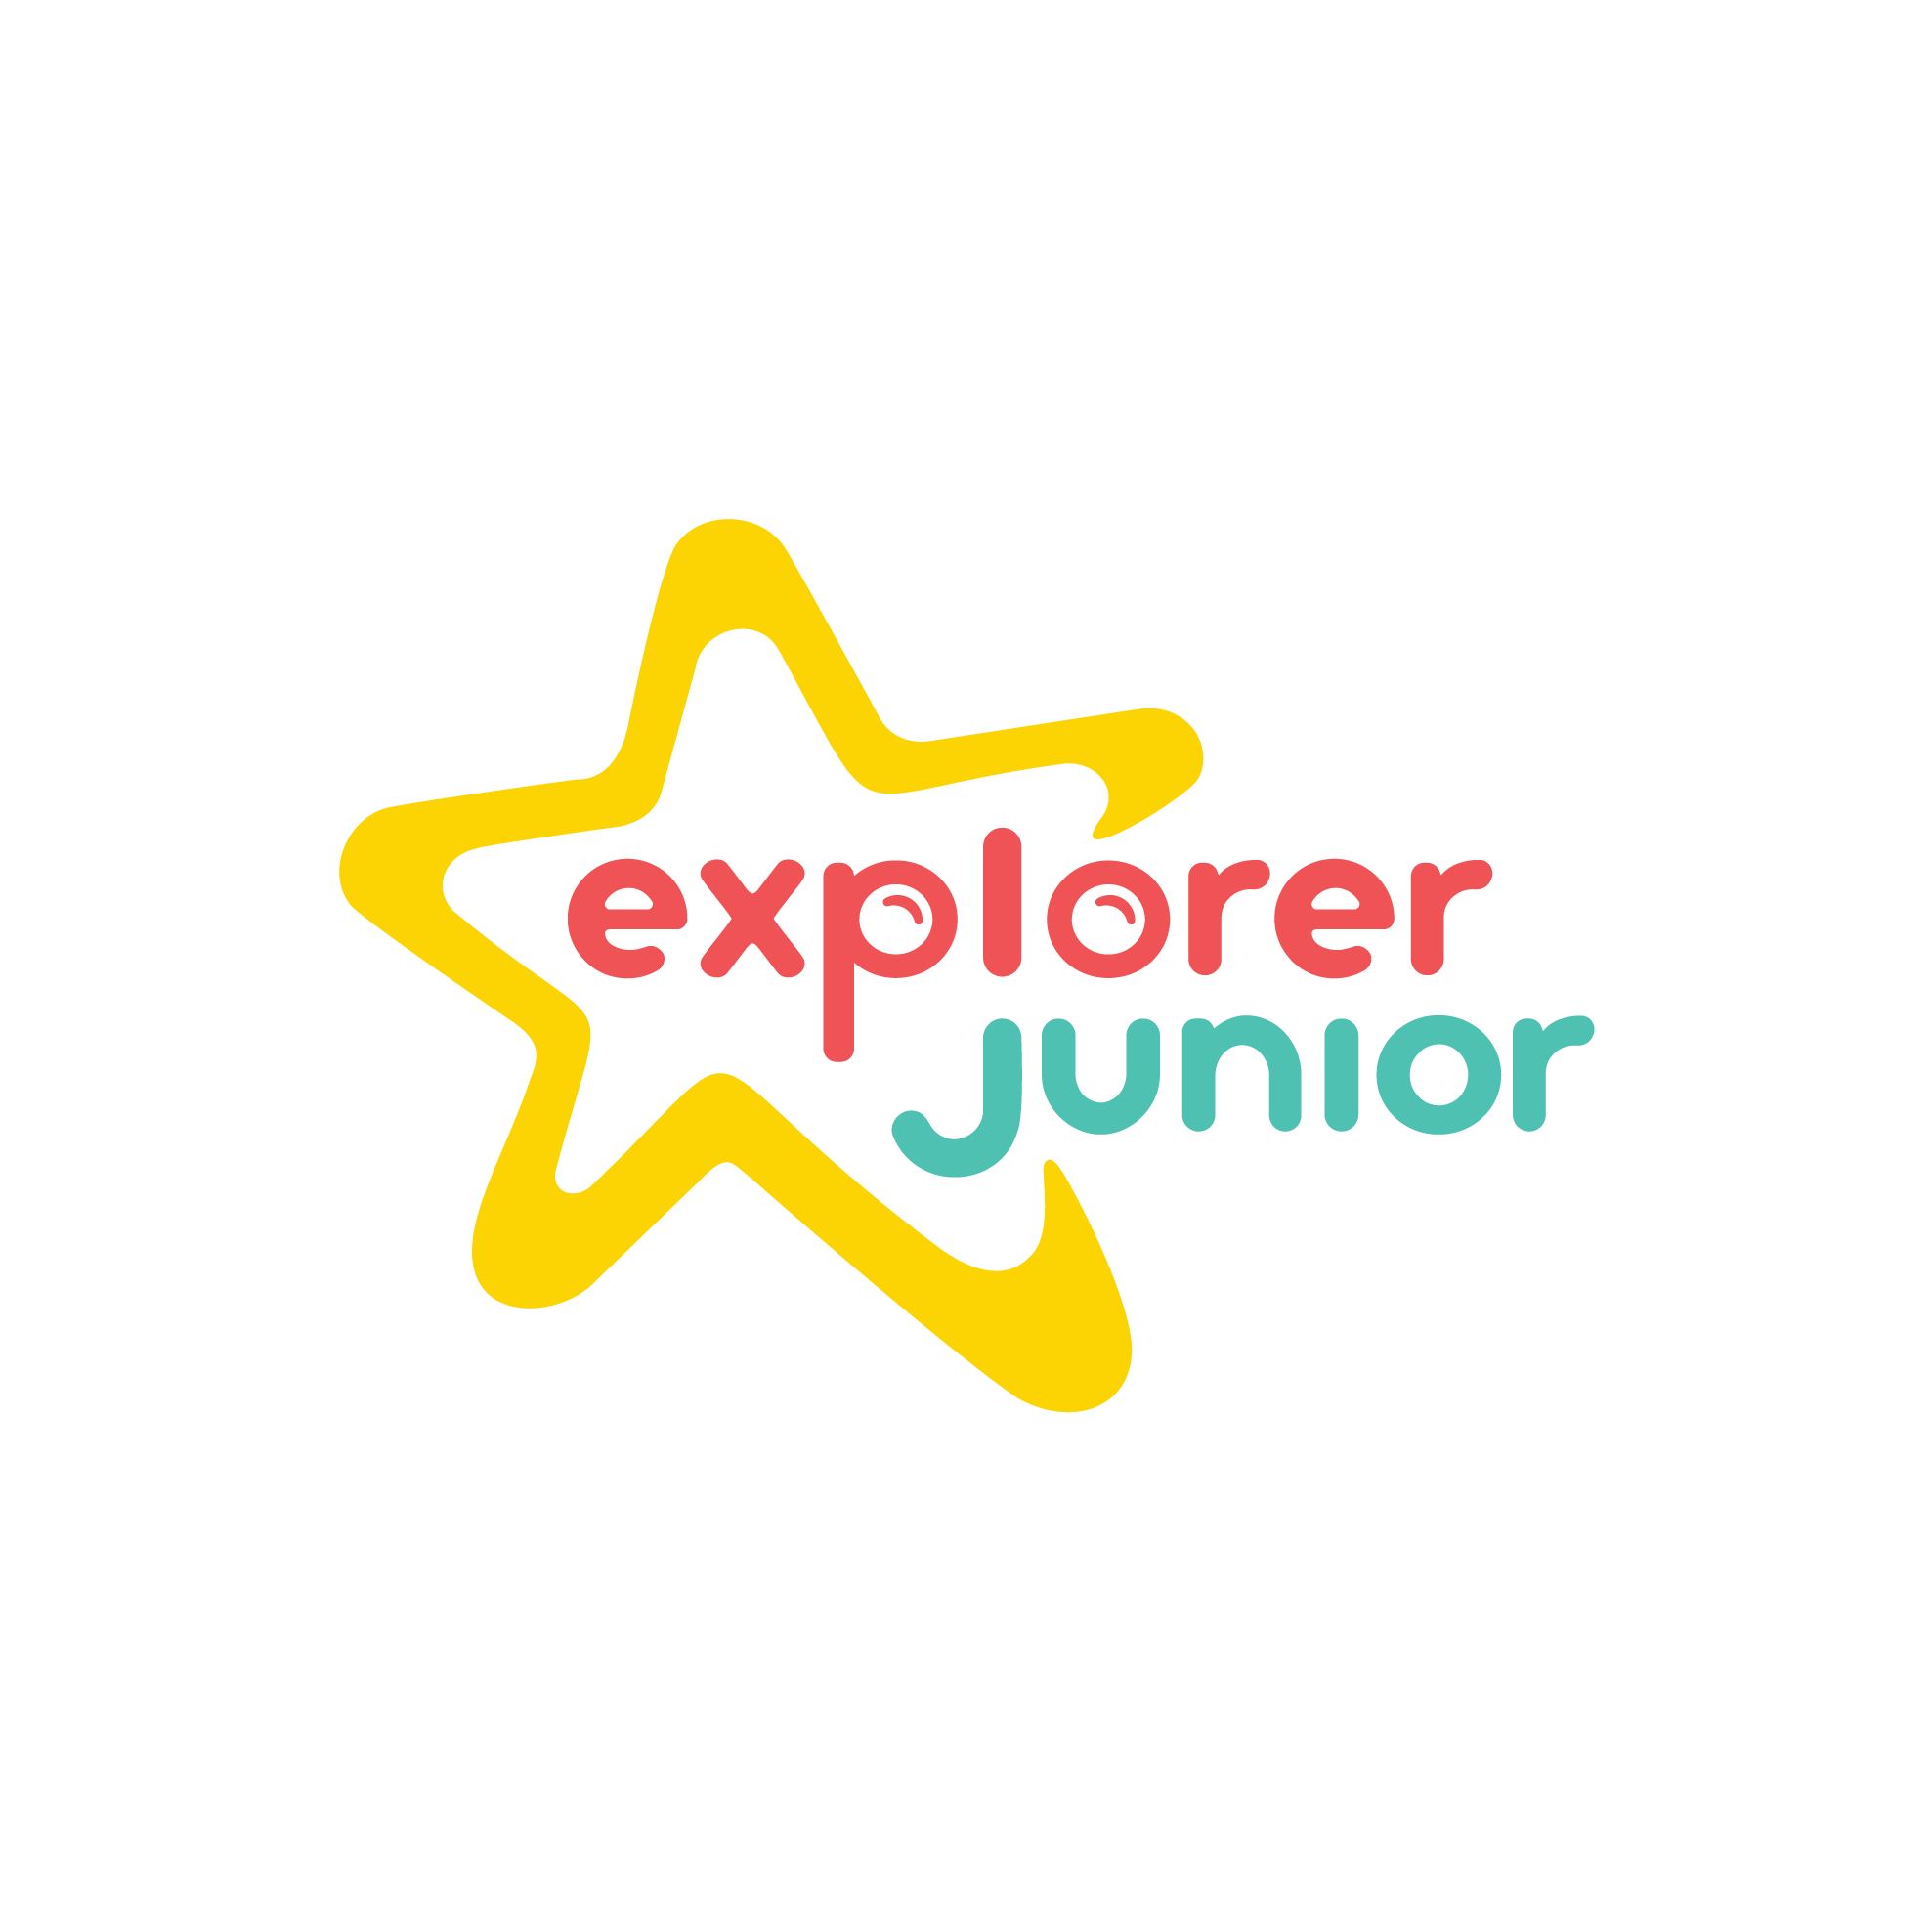 Explorer Junior